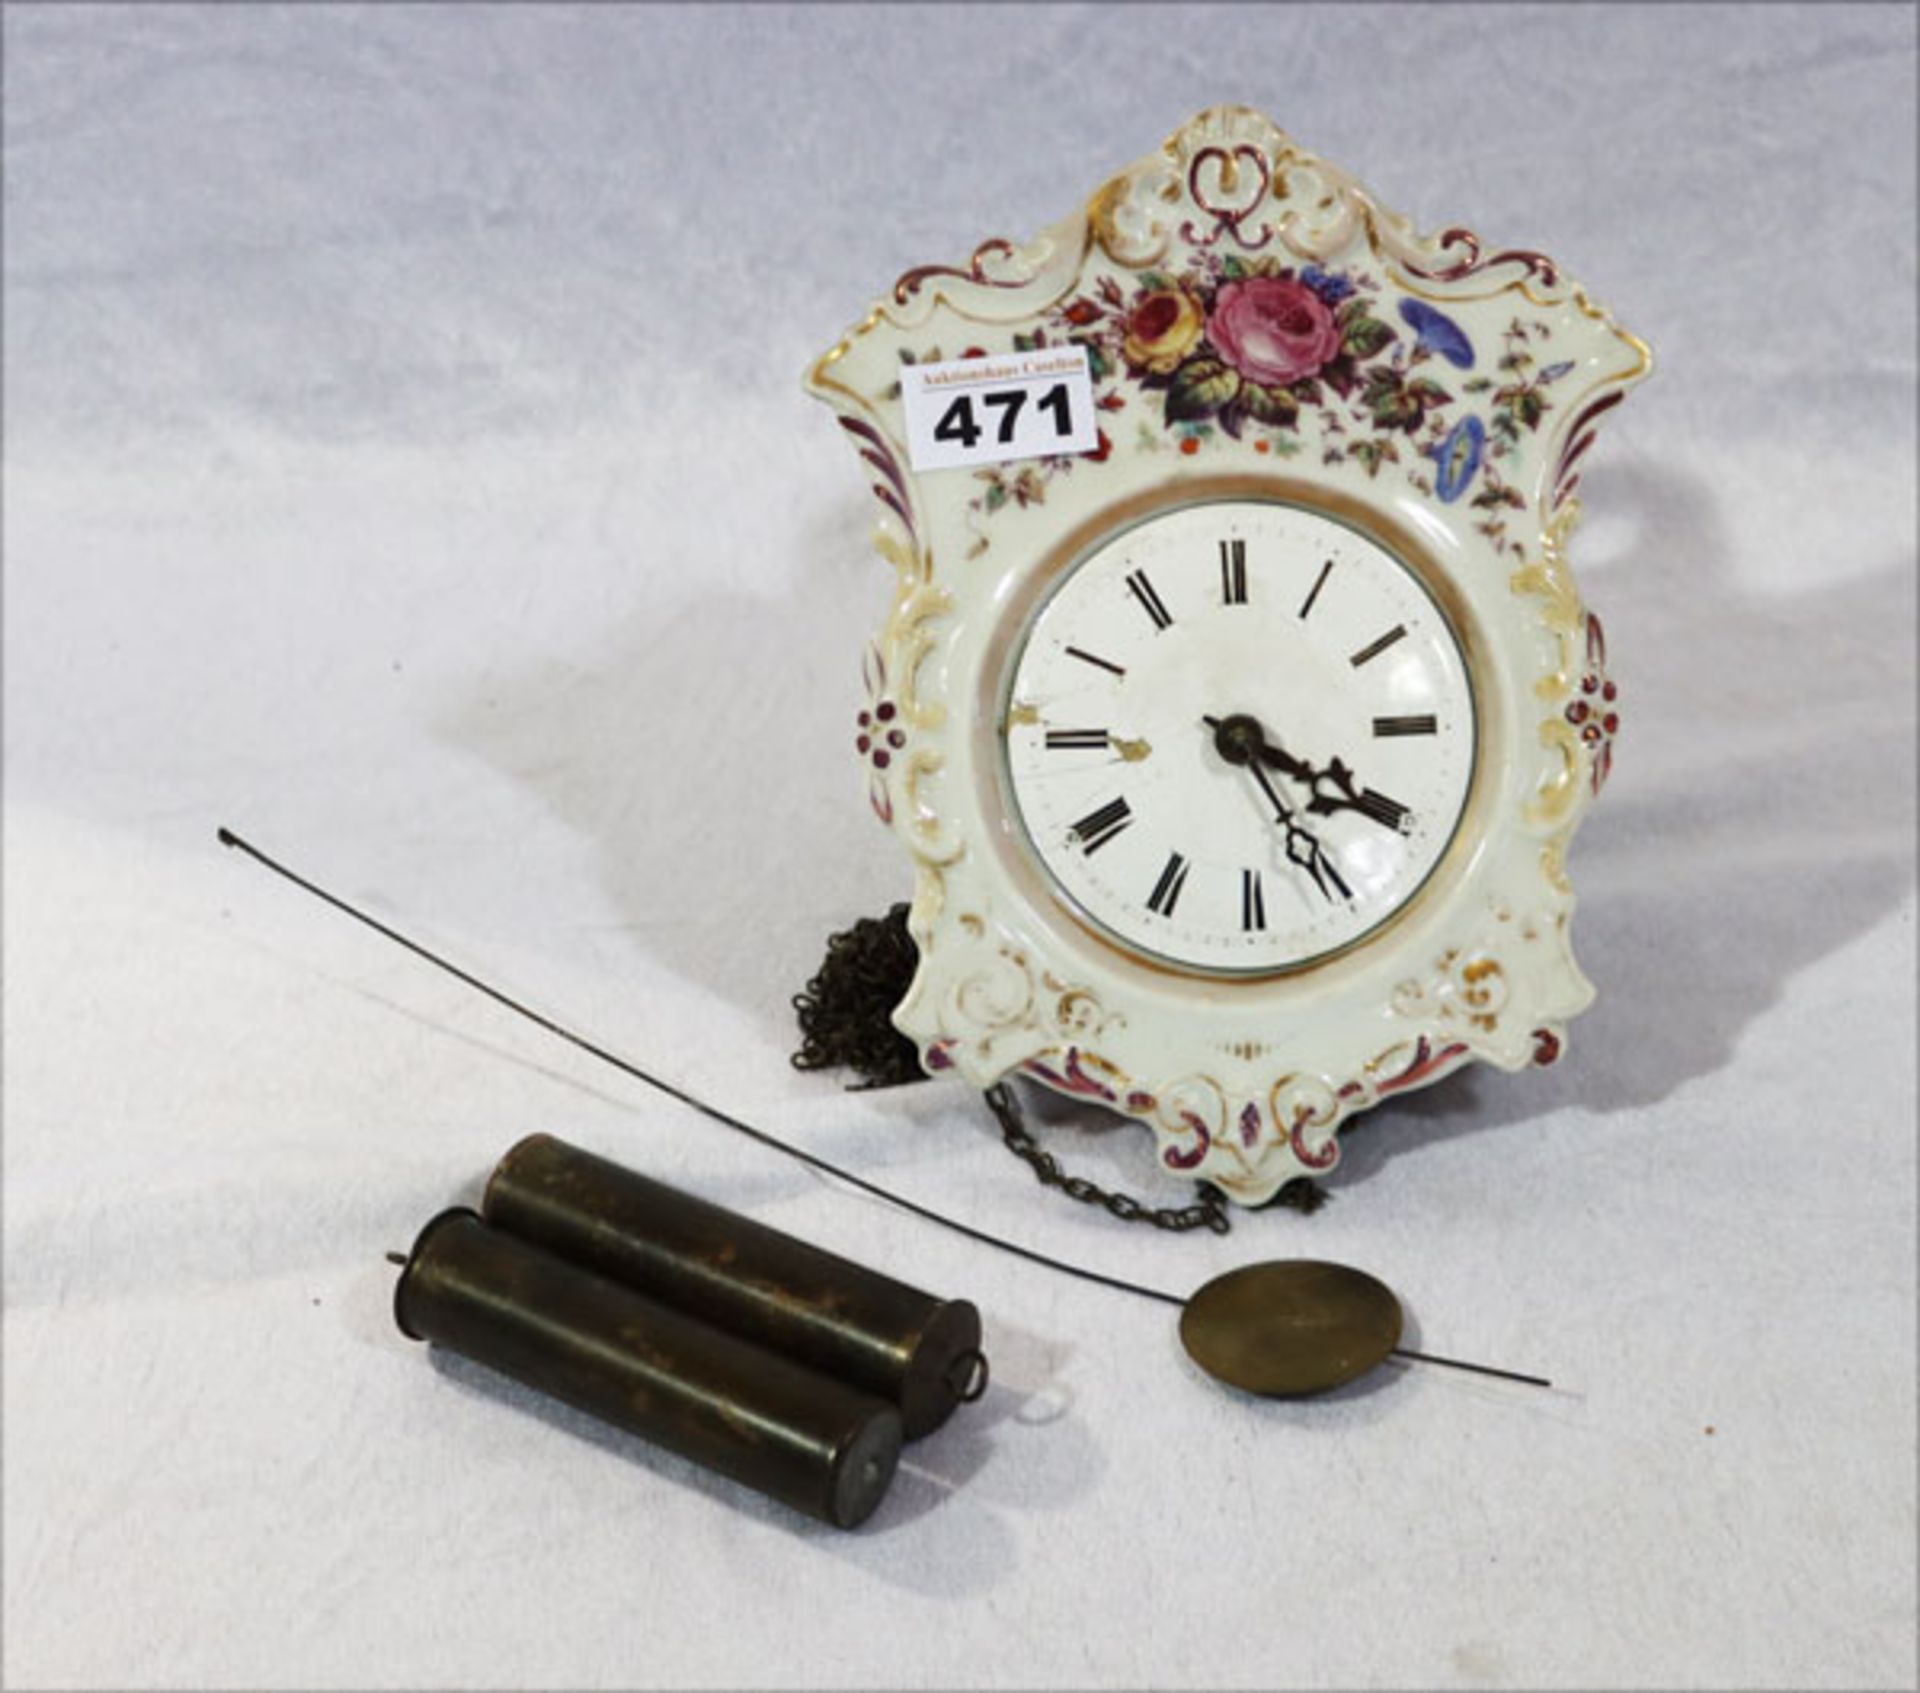 Porzellan Wanduhr mit Blumendekor, Emailzifferblatt beschädigt, Pendel und 2 Gewichte, H 22 cm, B 18